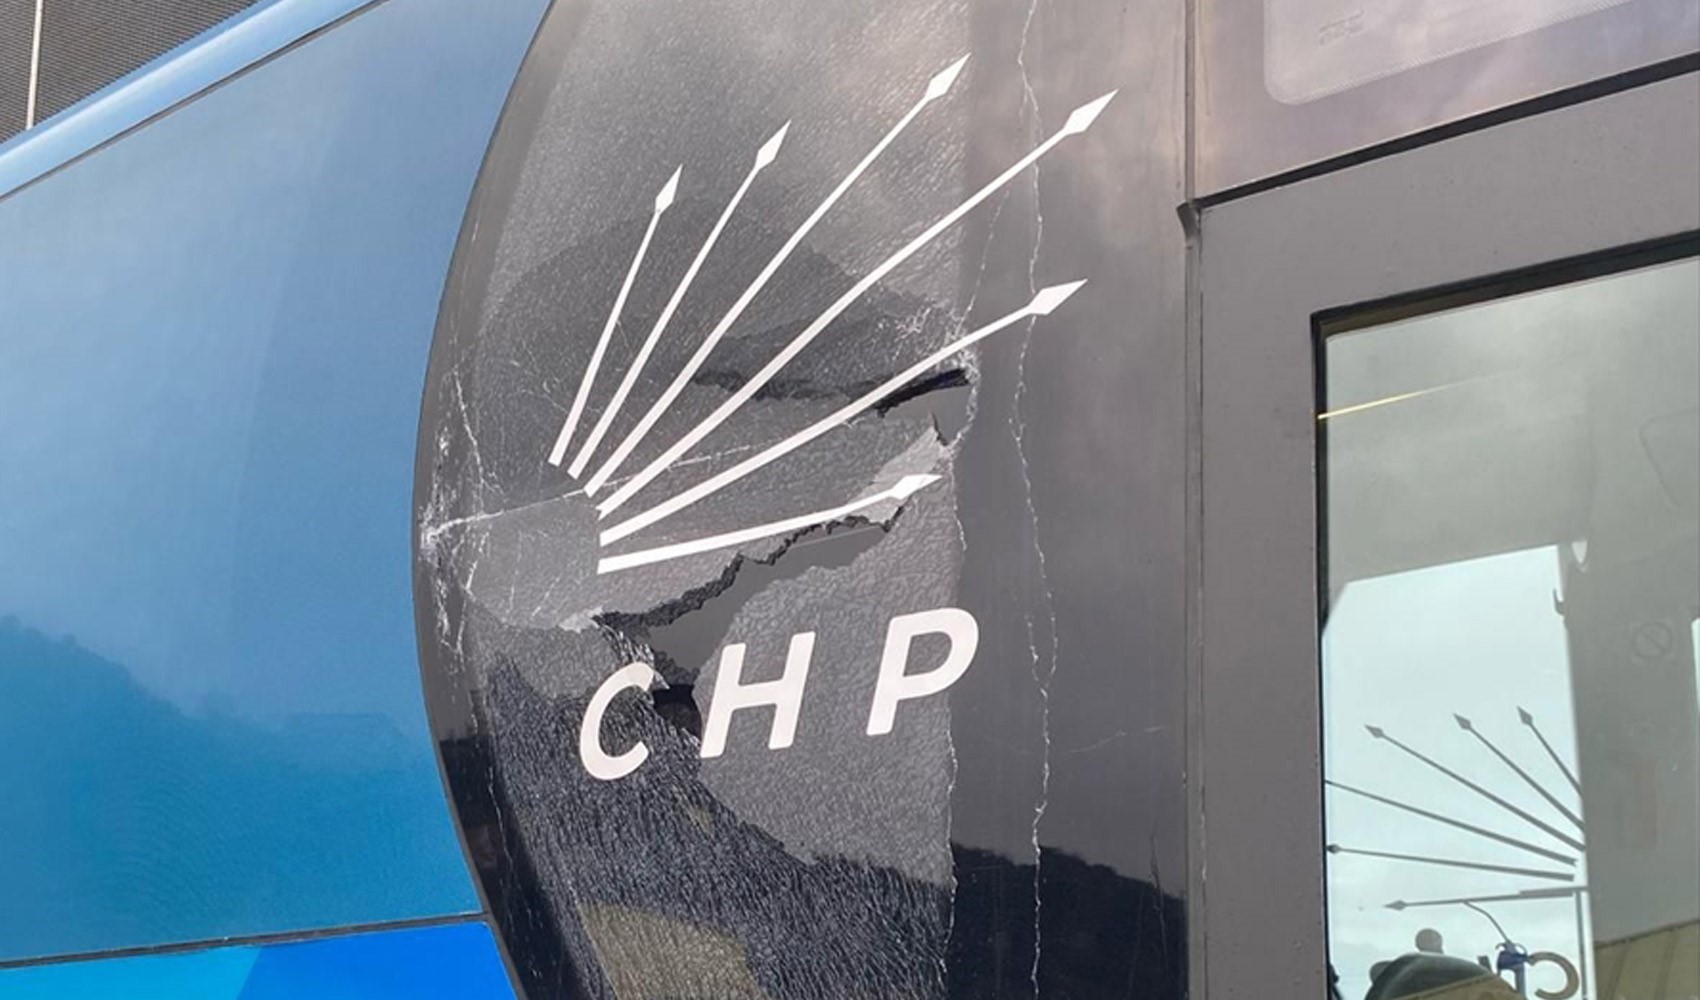 Trabzon Valiliğinden, CHP'nin miting otobüsüne taş atılmasına ilişkin açıklama